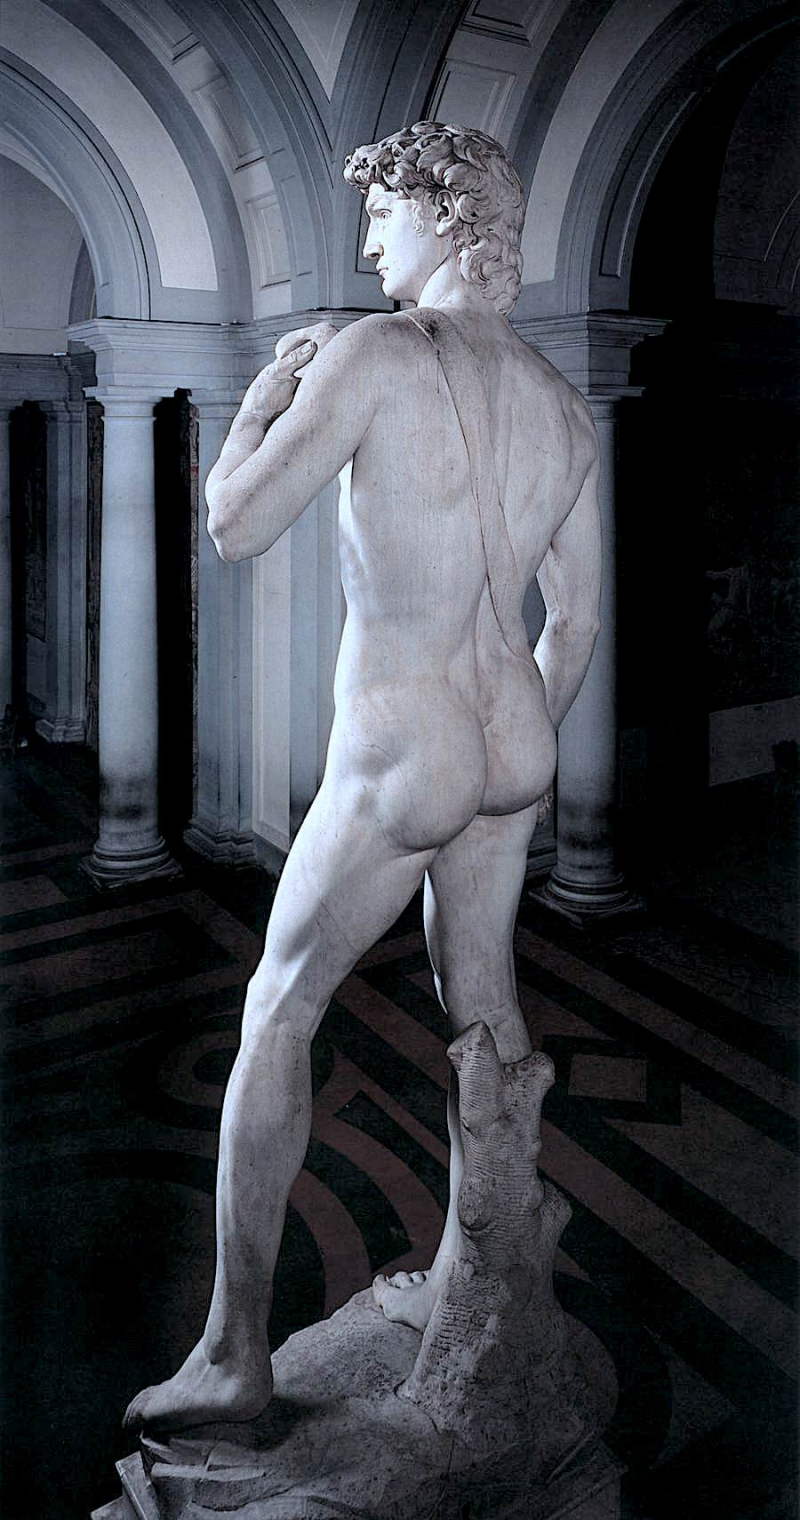 El David de Miguel Ángel - Michelangelo Buonarroti - Historia Arte (HA!)